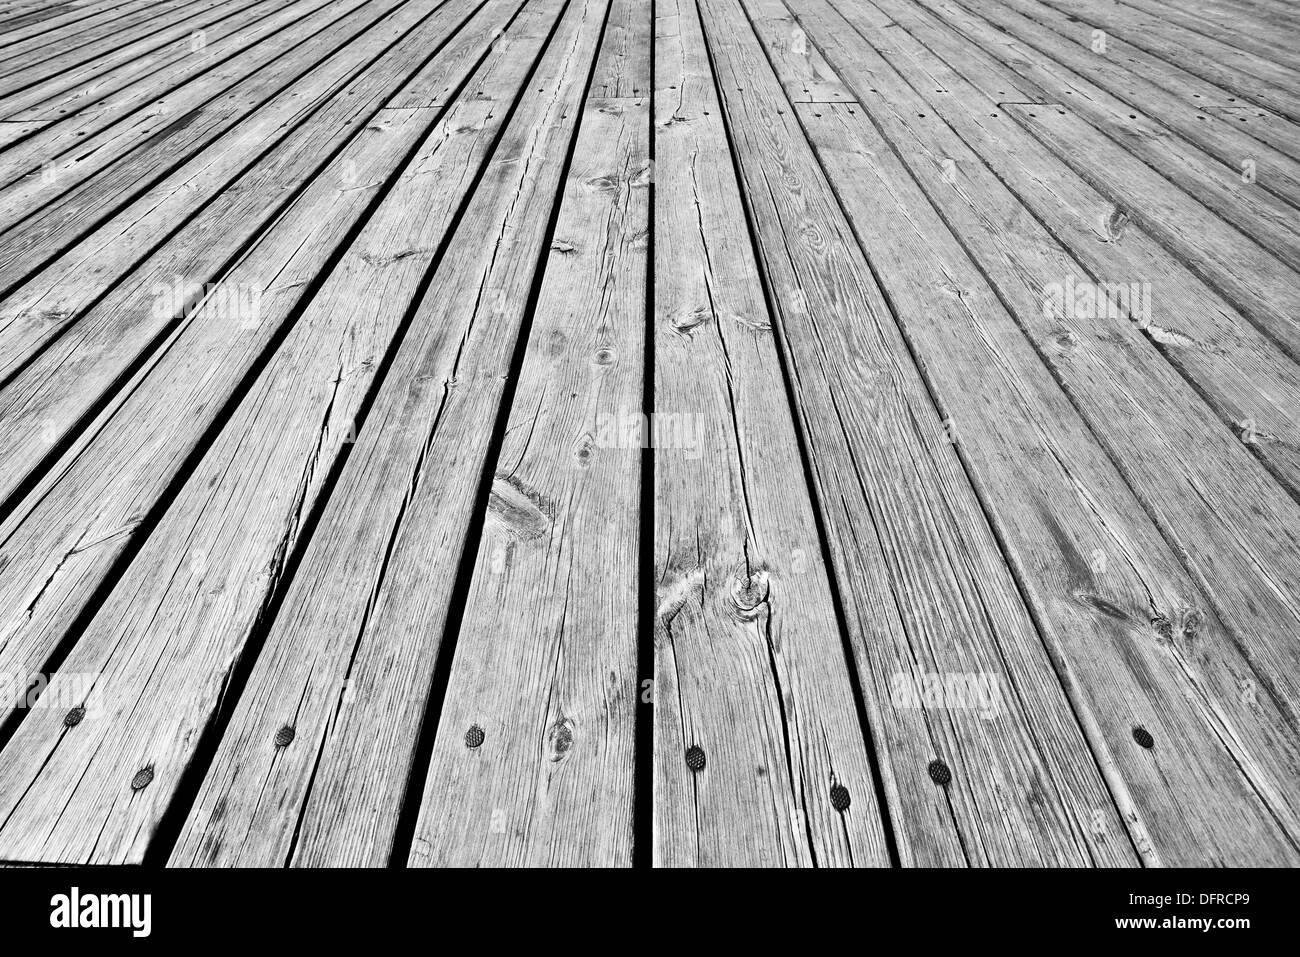 big,wooden floor, grey background Stock Photo